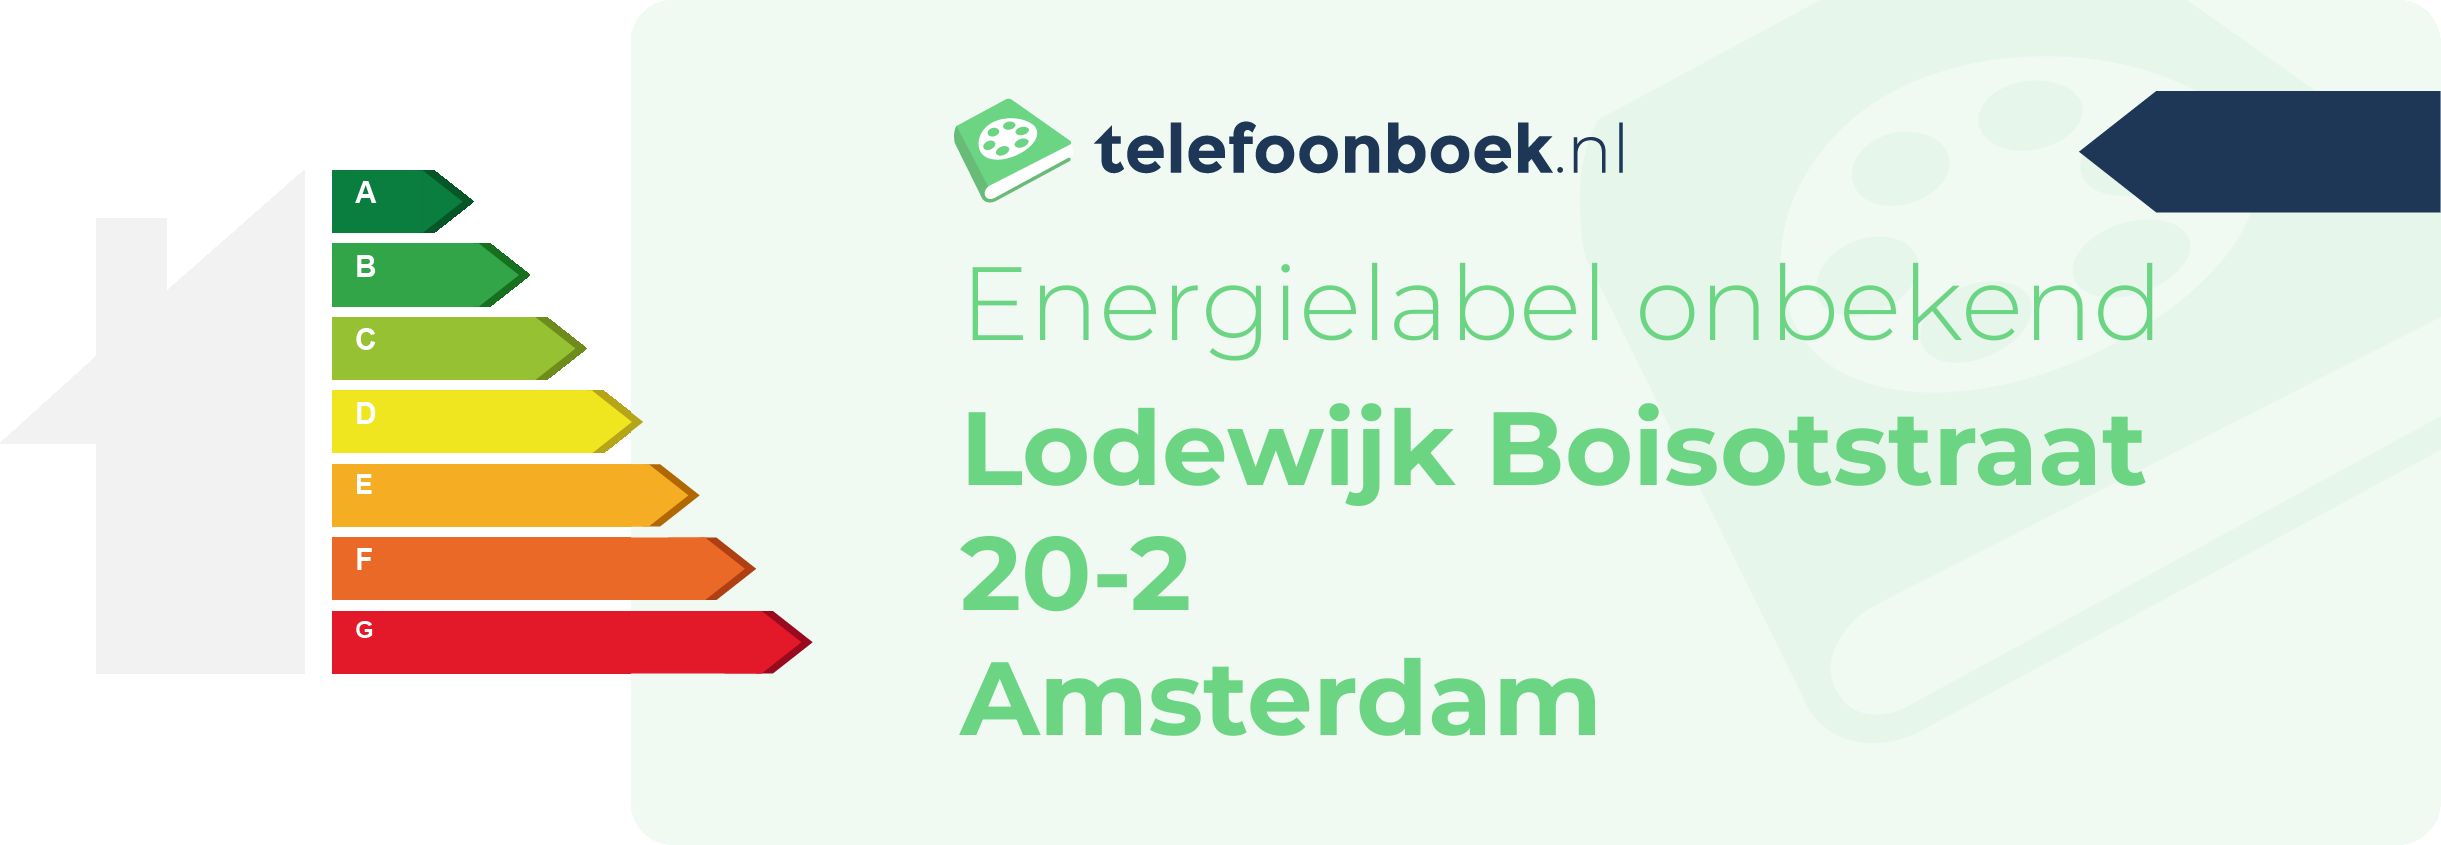 Energielabel Lodewijk Boisotstraat 20-2 Amsterdam